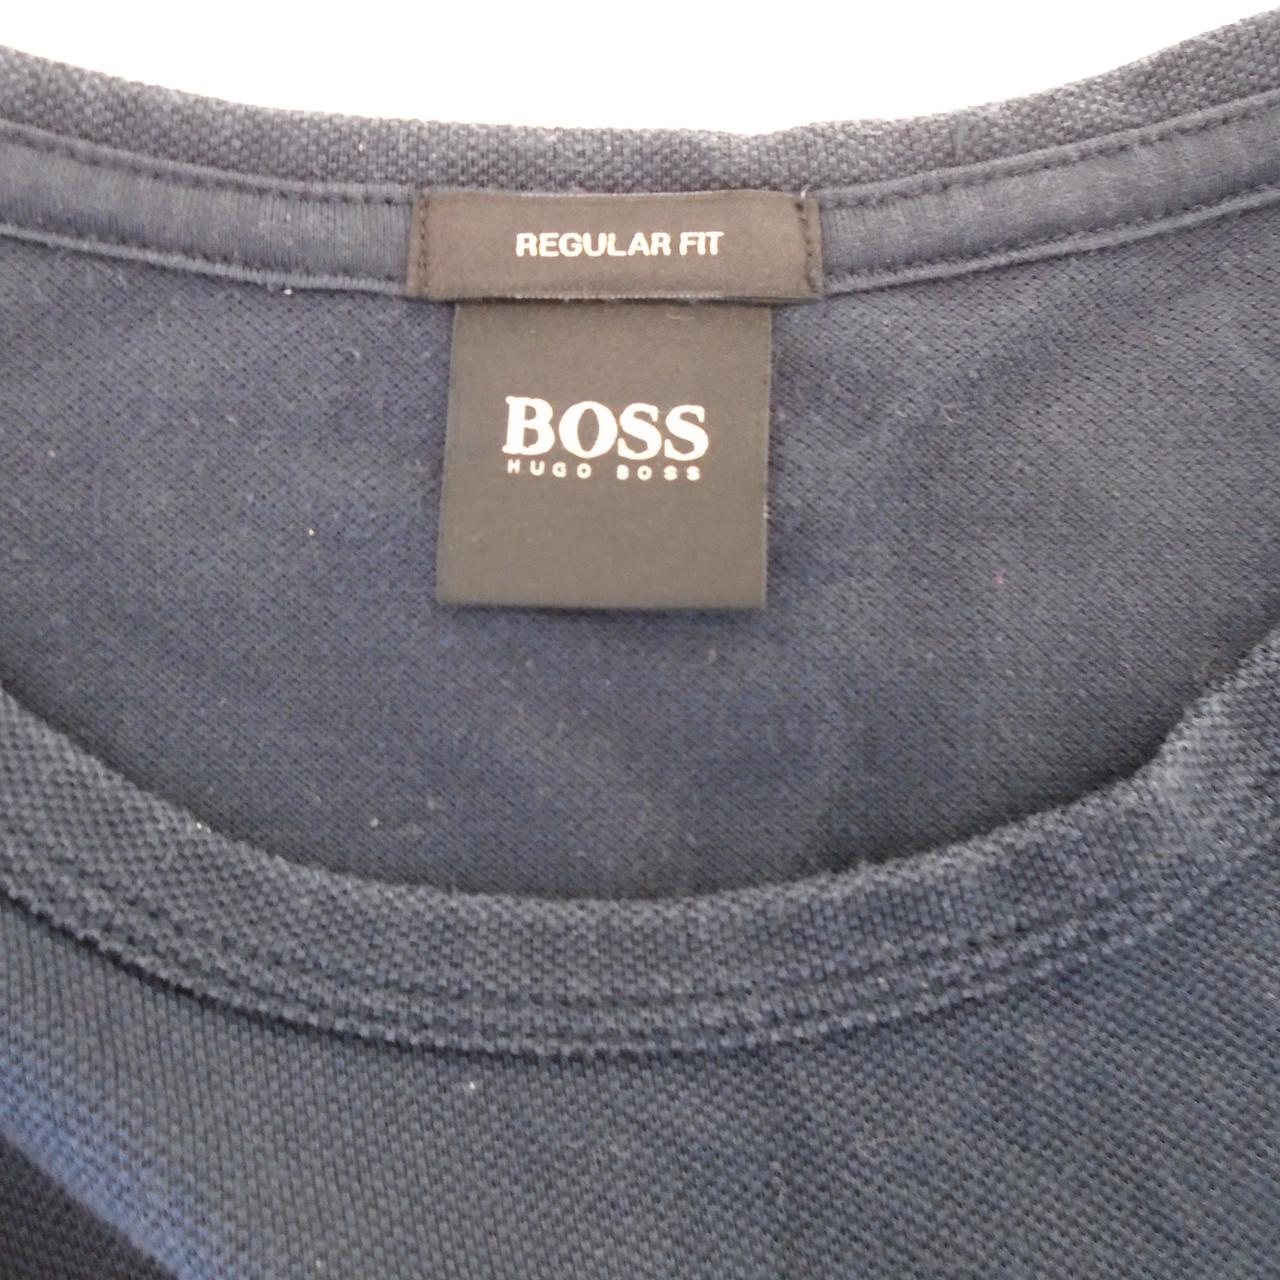 Men's T-Shirt Hugo Boss. Black. S. Used. Good